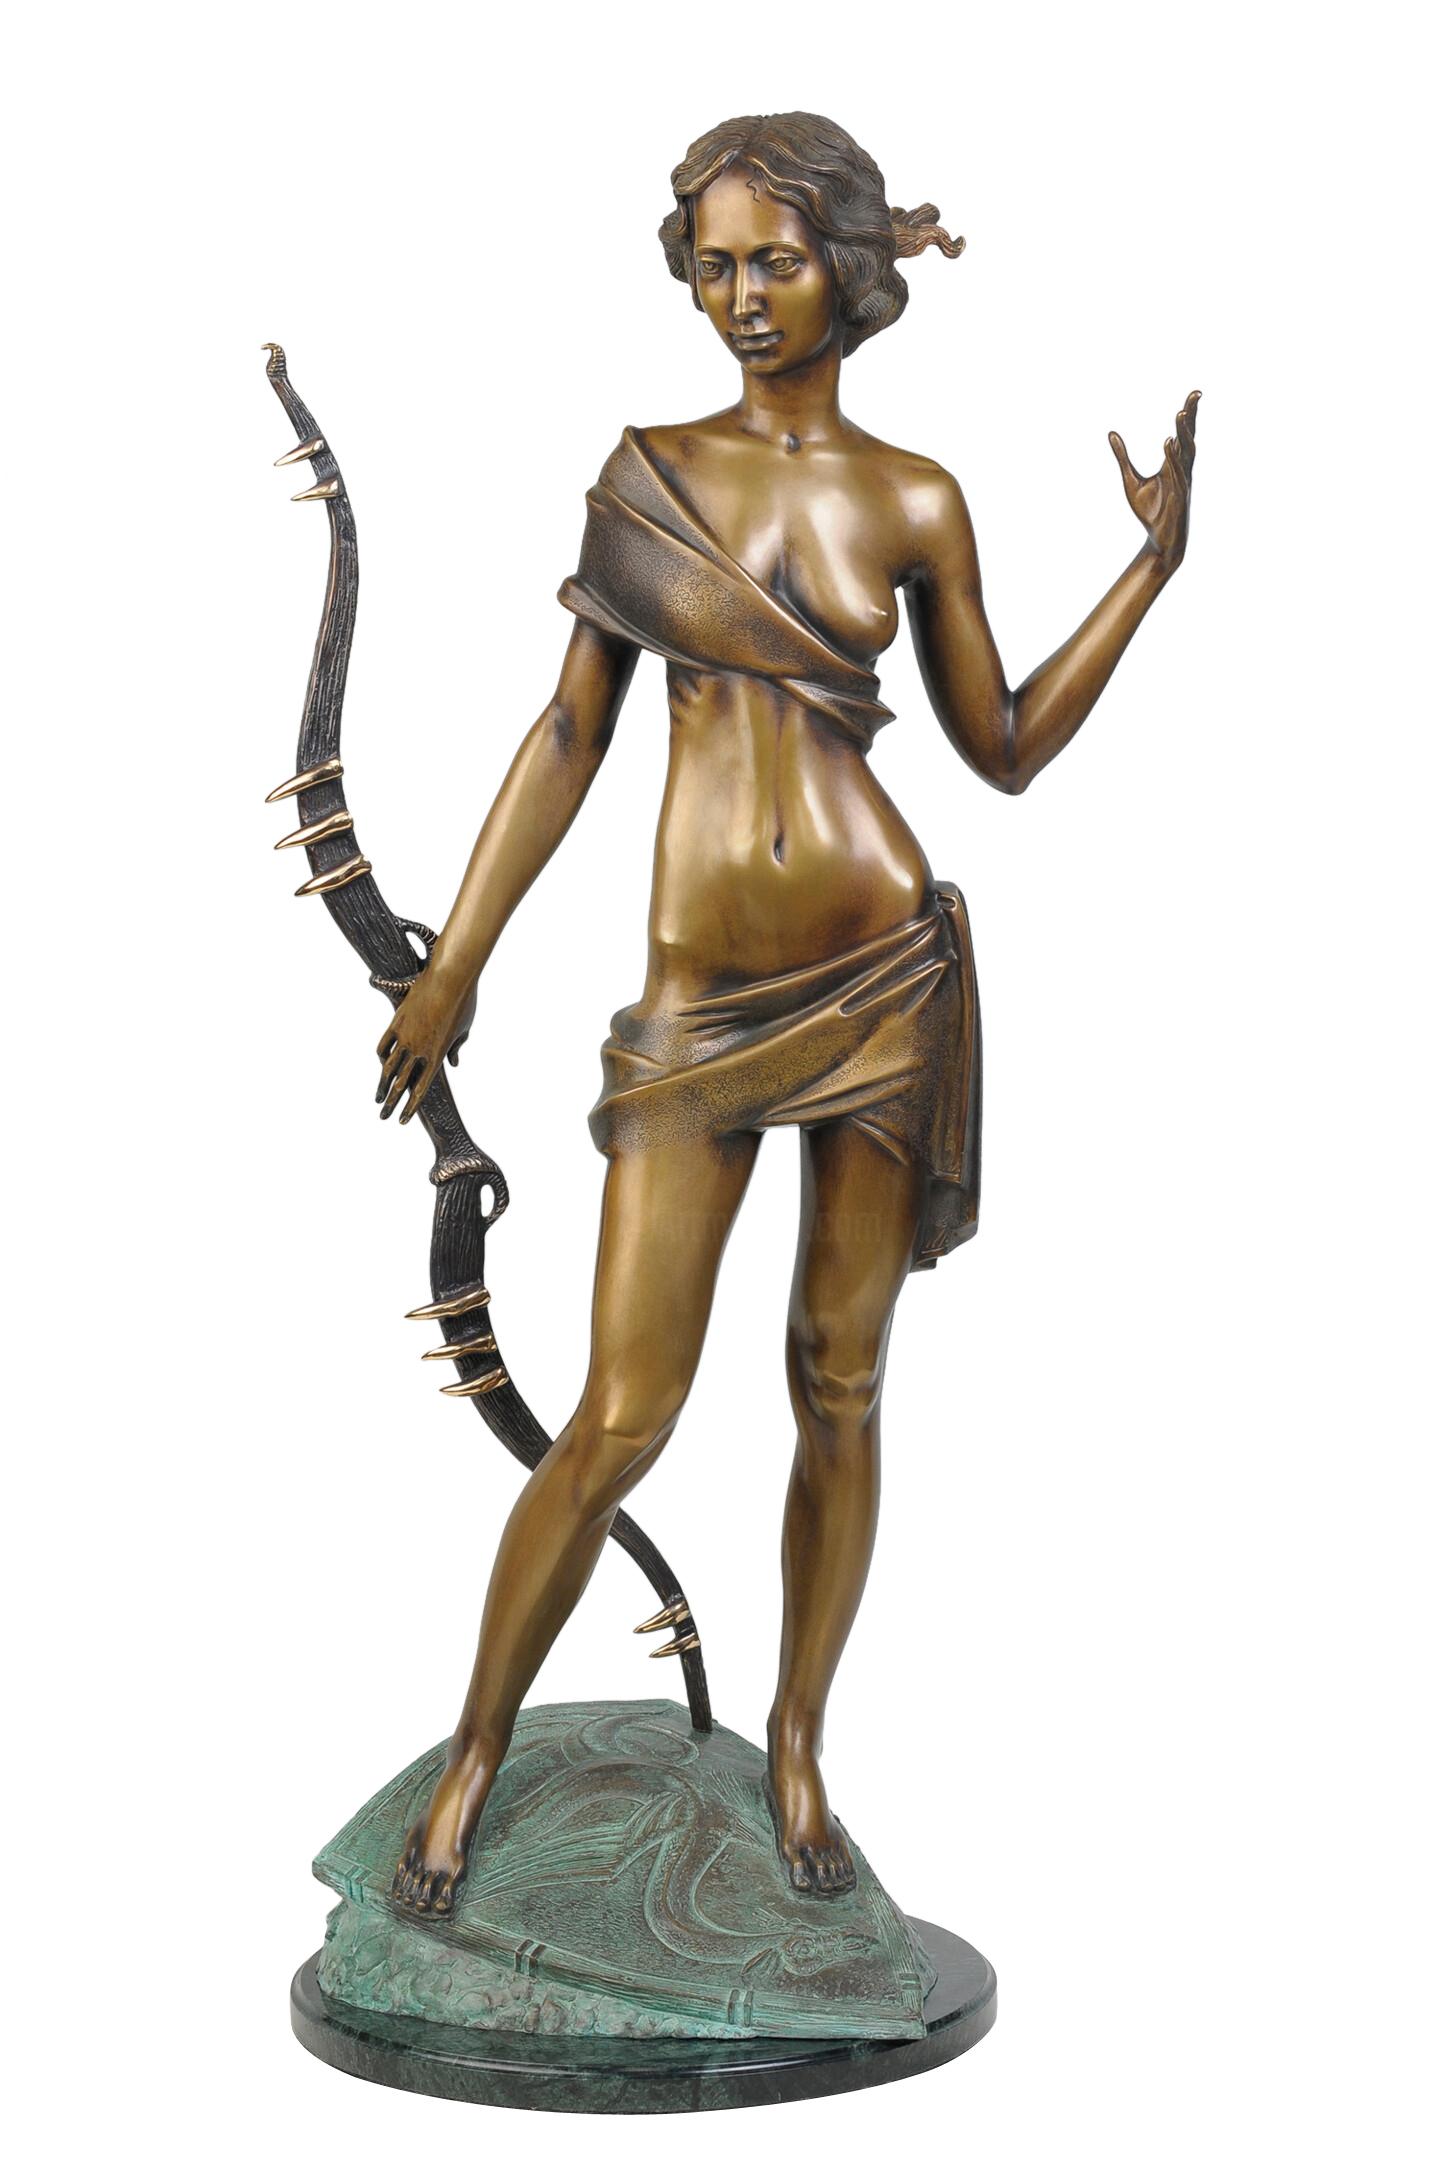 Volodymyr MYKYTENKO Figurative Sculpture - Huntress, Bronze Sculpture by Volodymyr Mykytenko, 2006